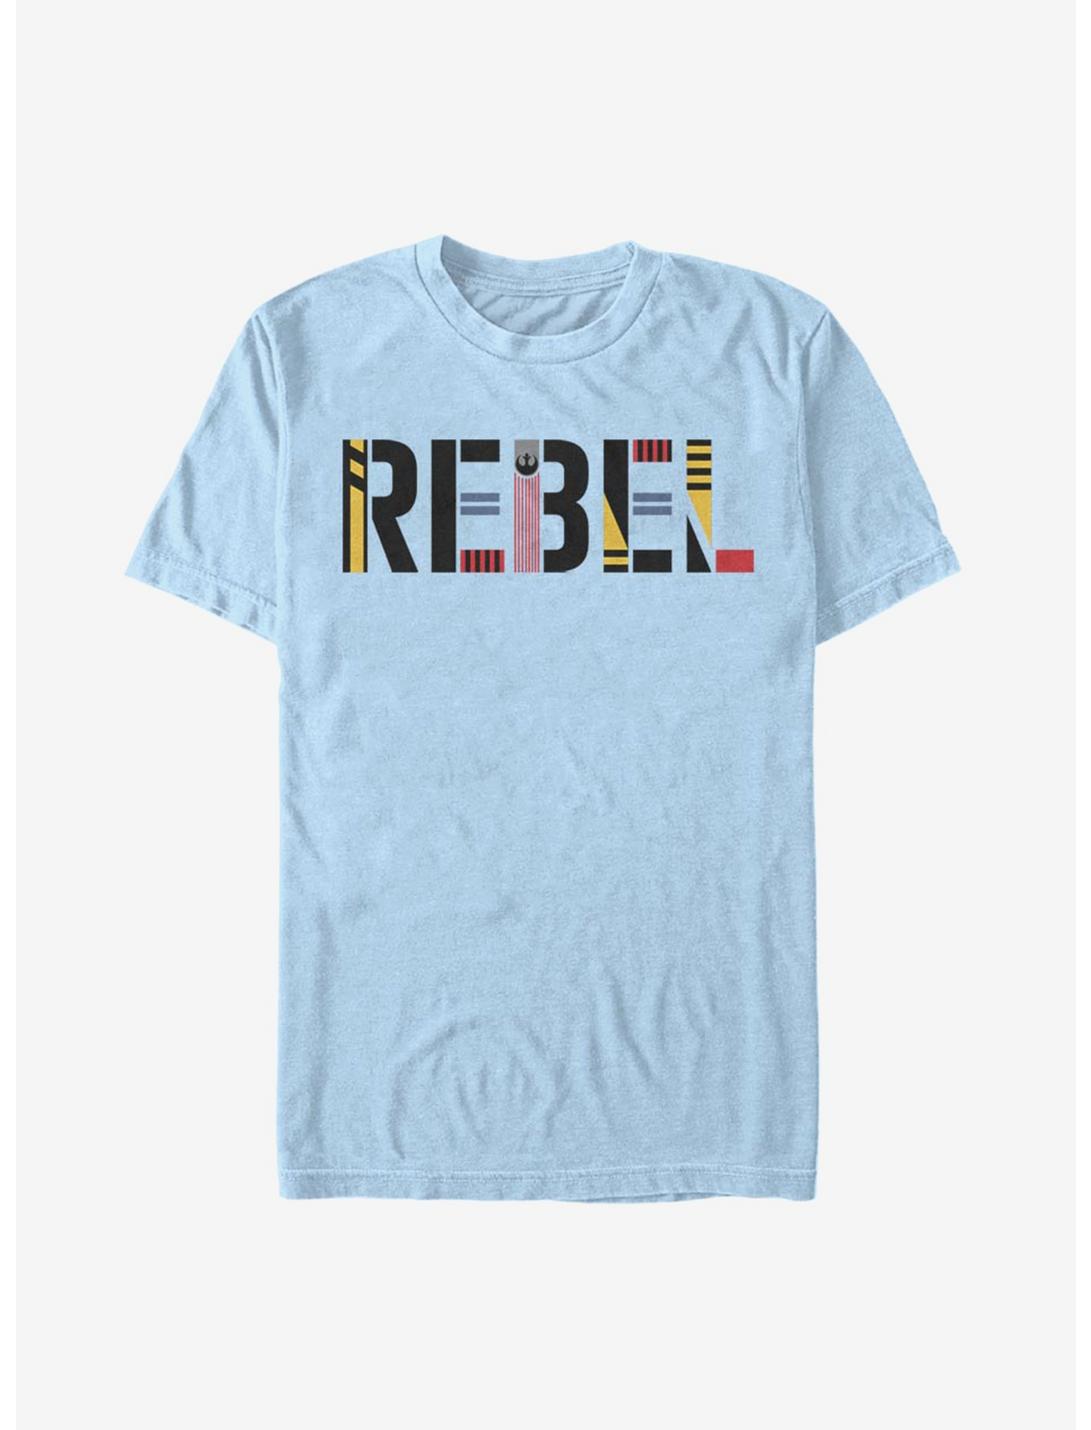 Star Wars Episode IX The Rise Of Skywalker Rebel Simple T-Shirt, LT BLUE, hi-res